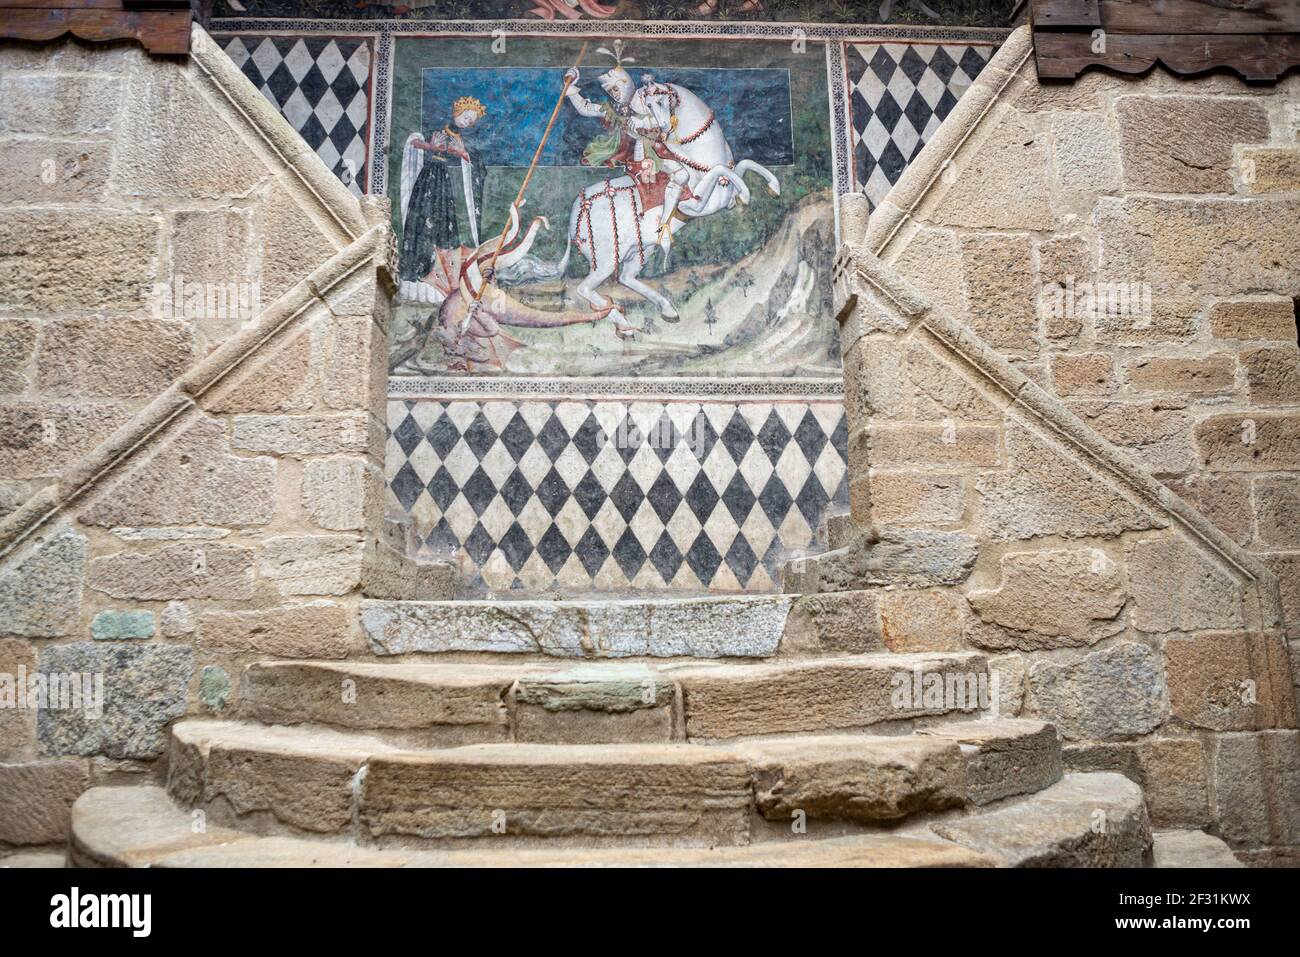 Saint George tuant le dragon dans une fresque de peinture dans la cour centrale du château de Fenis. Cette peinture date de 1200. Fenis, Aoste, Italie Banque D'Images